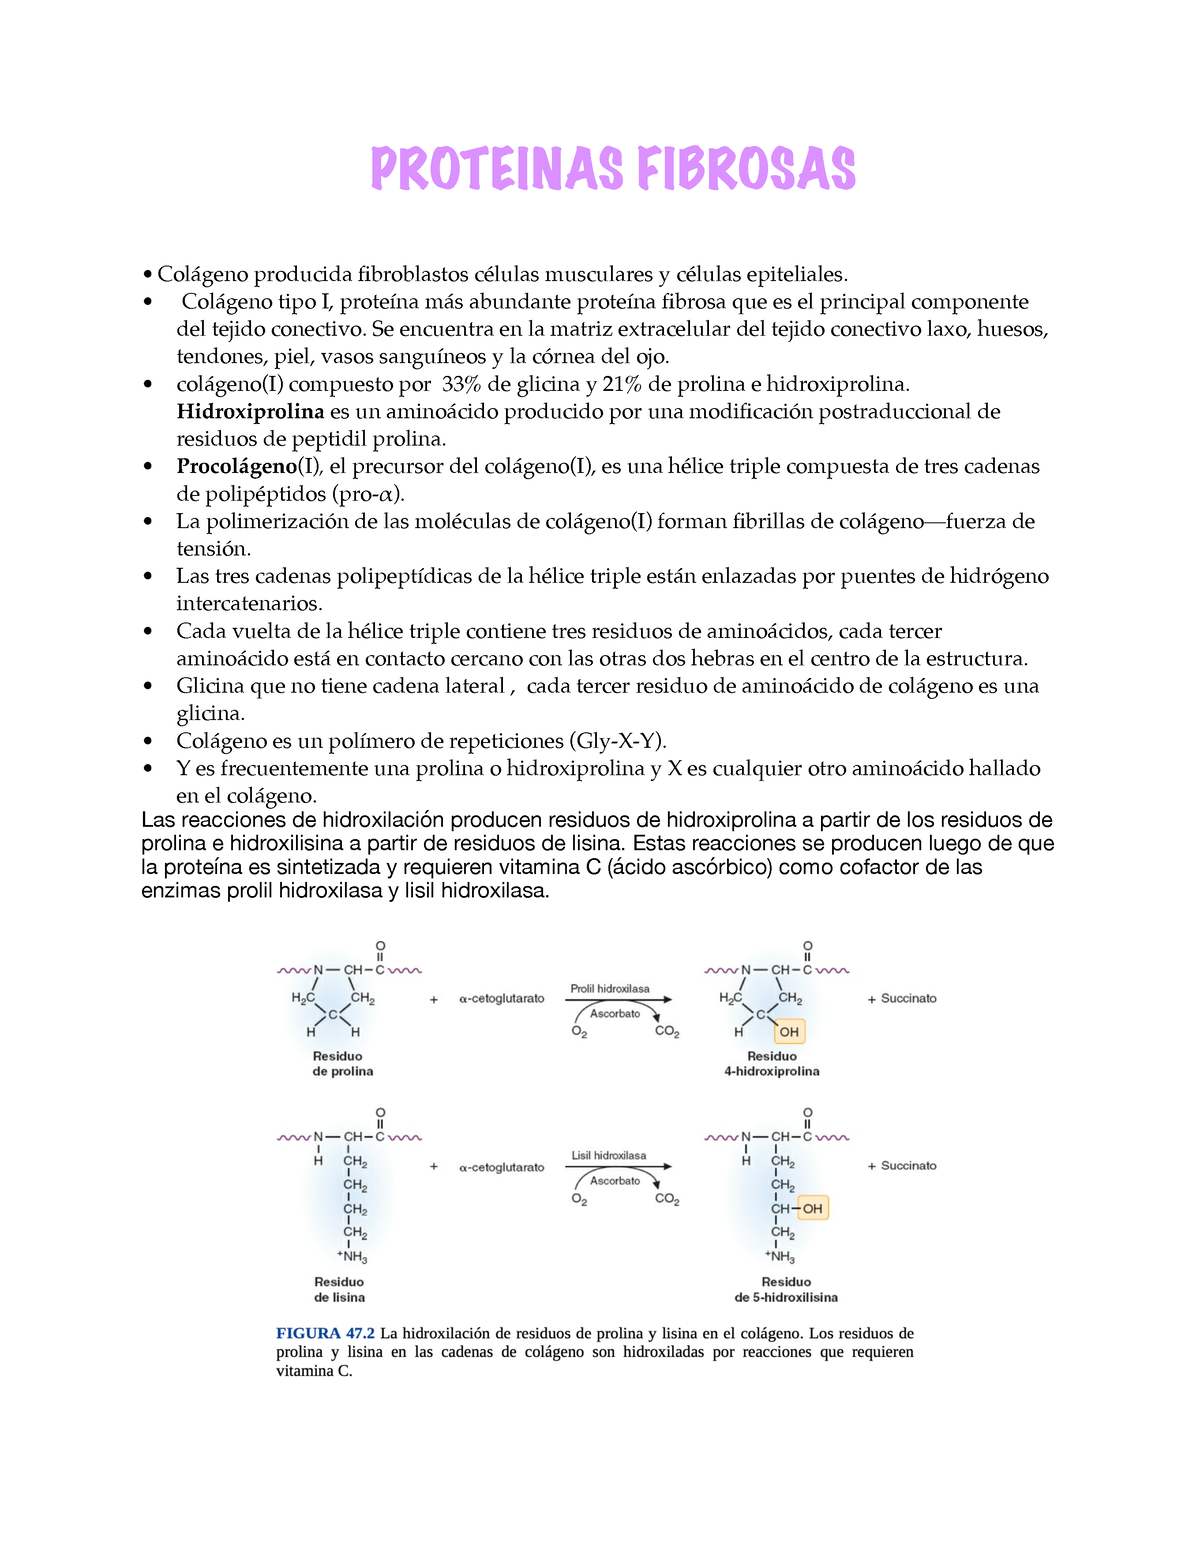 Fibrosas Bioquímica Proteinas Fibrosas Colágeno Producida Fibroblastos Células Musculares Y 0292